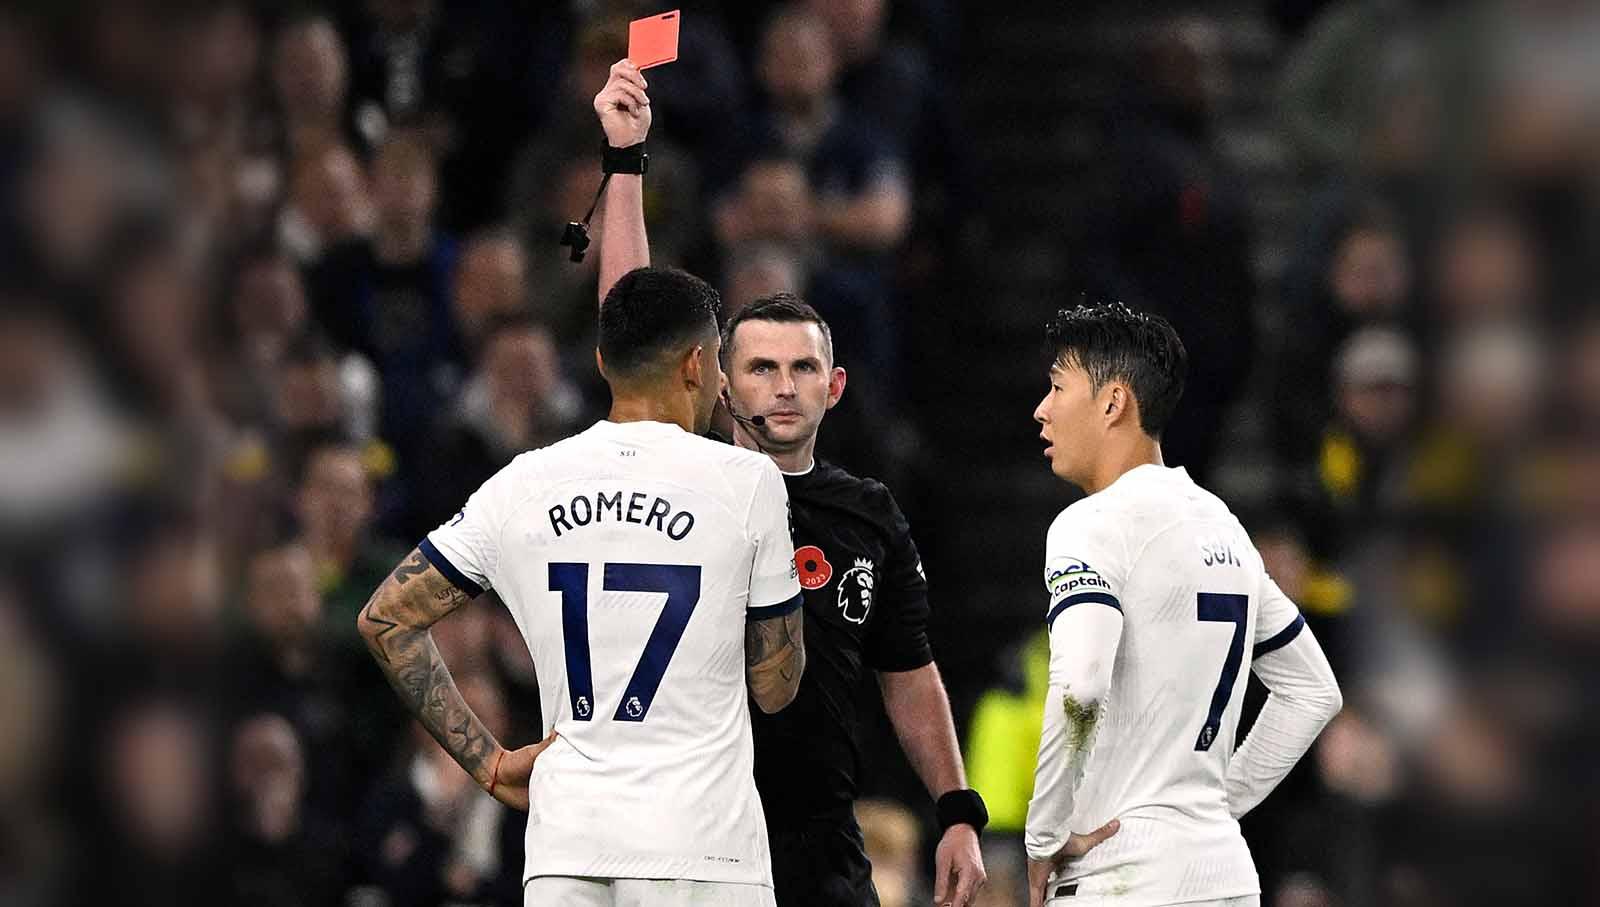 Bahkan di laga tersebut Tottenham Hotspur harus kehilangan Cristian Romero yang diganjar kartu merah oleh wasit. Foto: REUTERS/Tony Obrien.